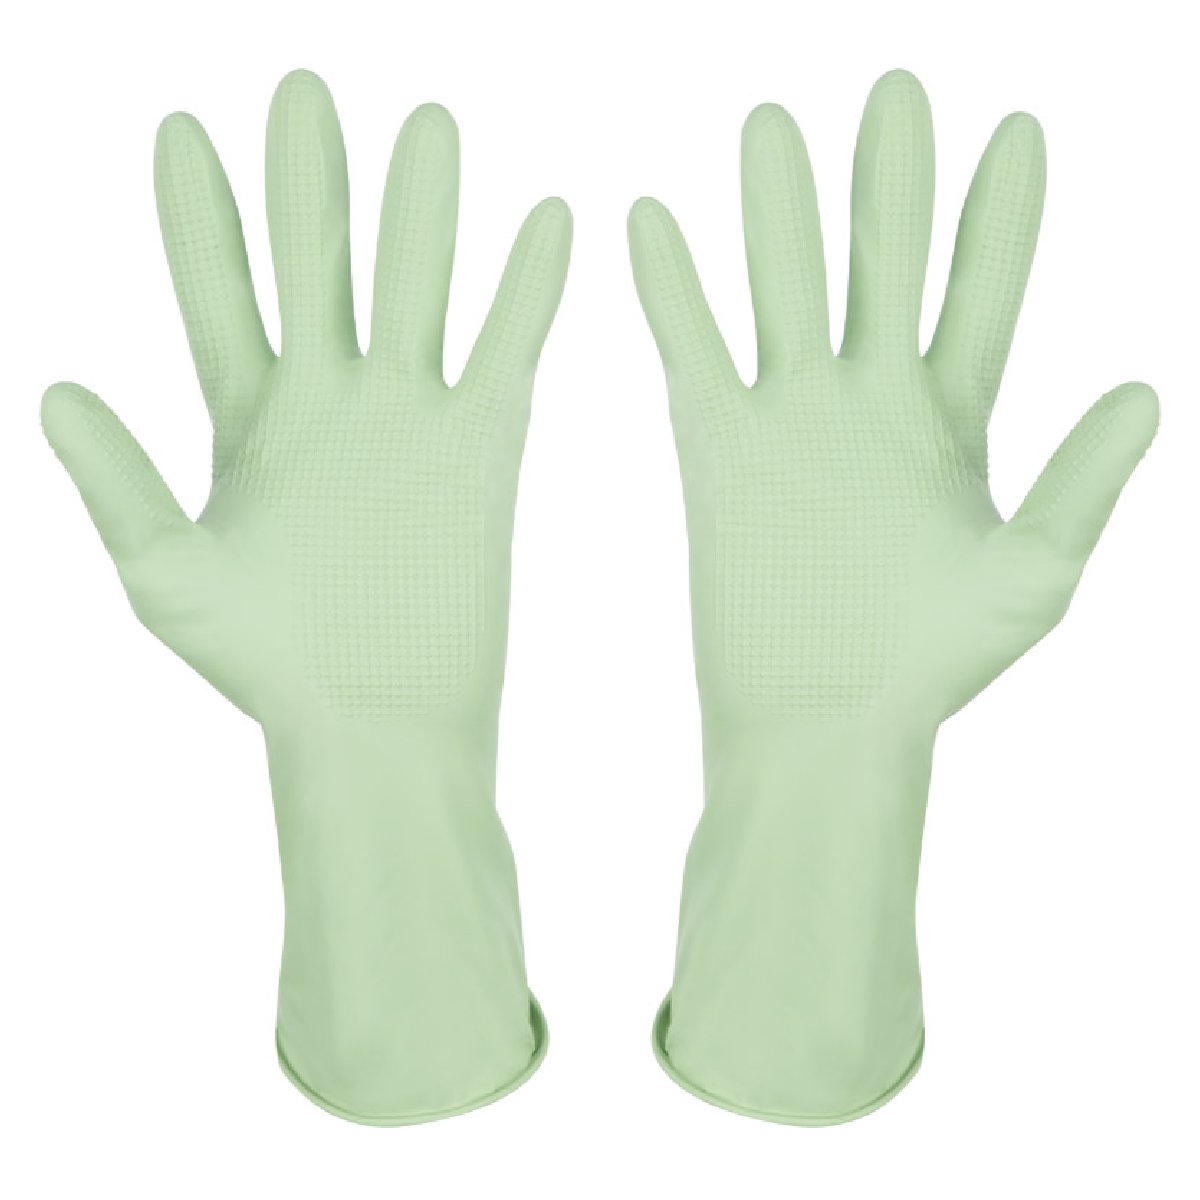 Перчатки латексные с хлопковым напылением, зеленые, размер S (101278)Купить